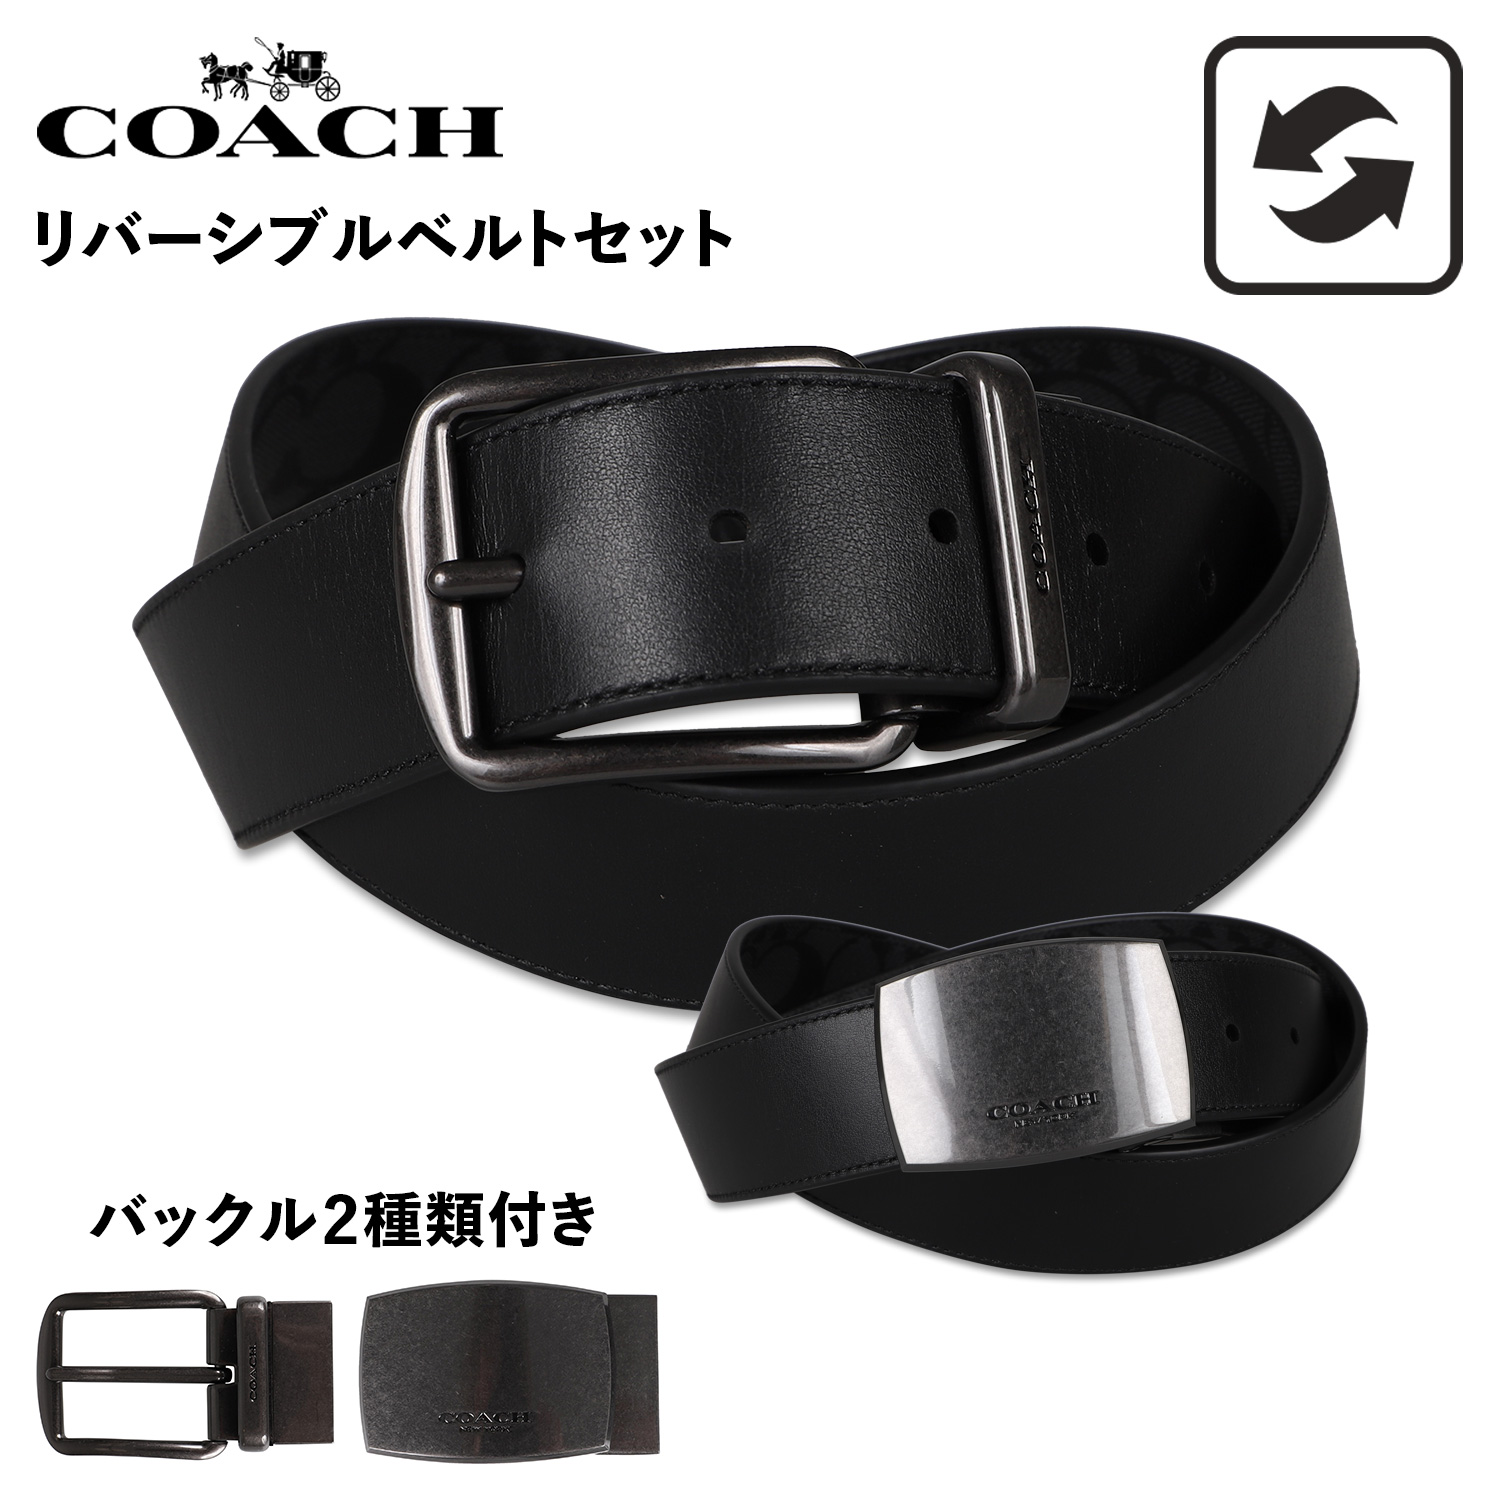 特売 コーチ COACH ベルト メンズ バックル2個セット 本革